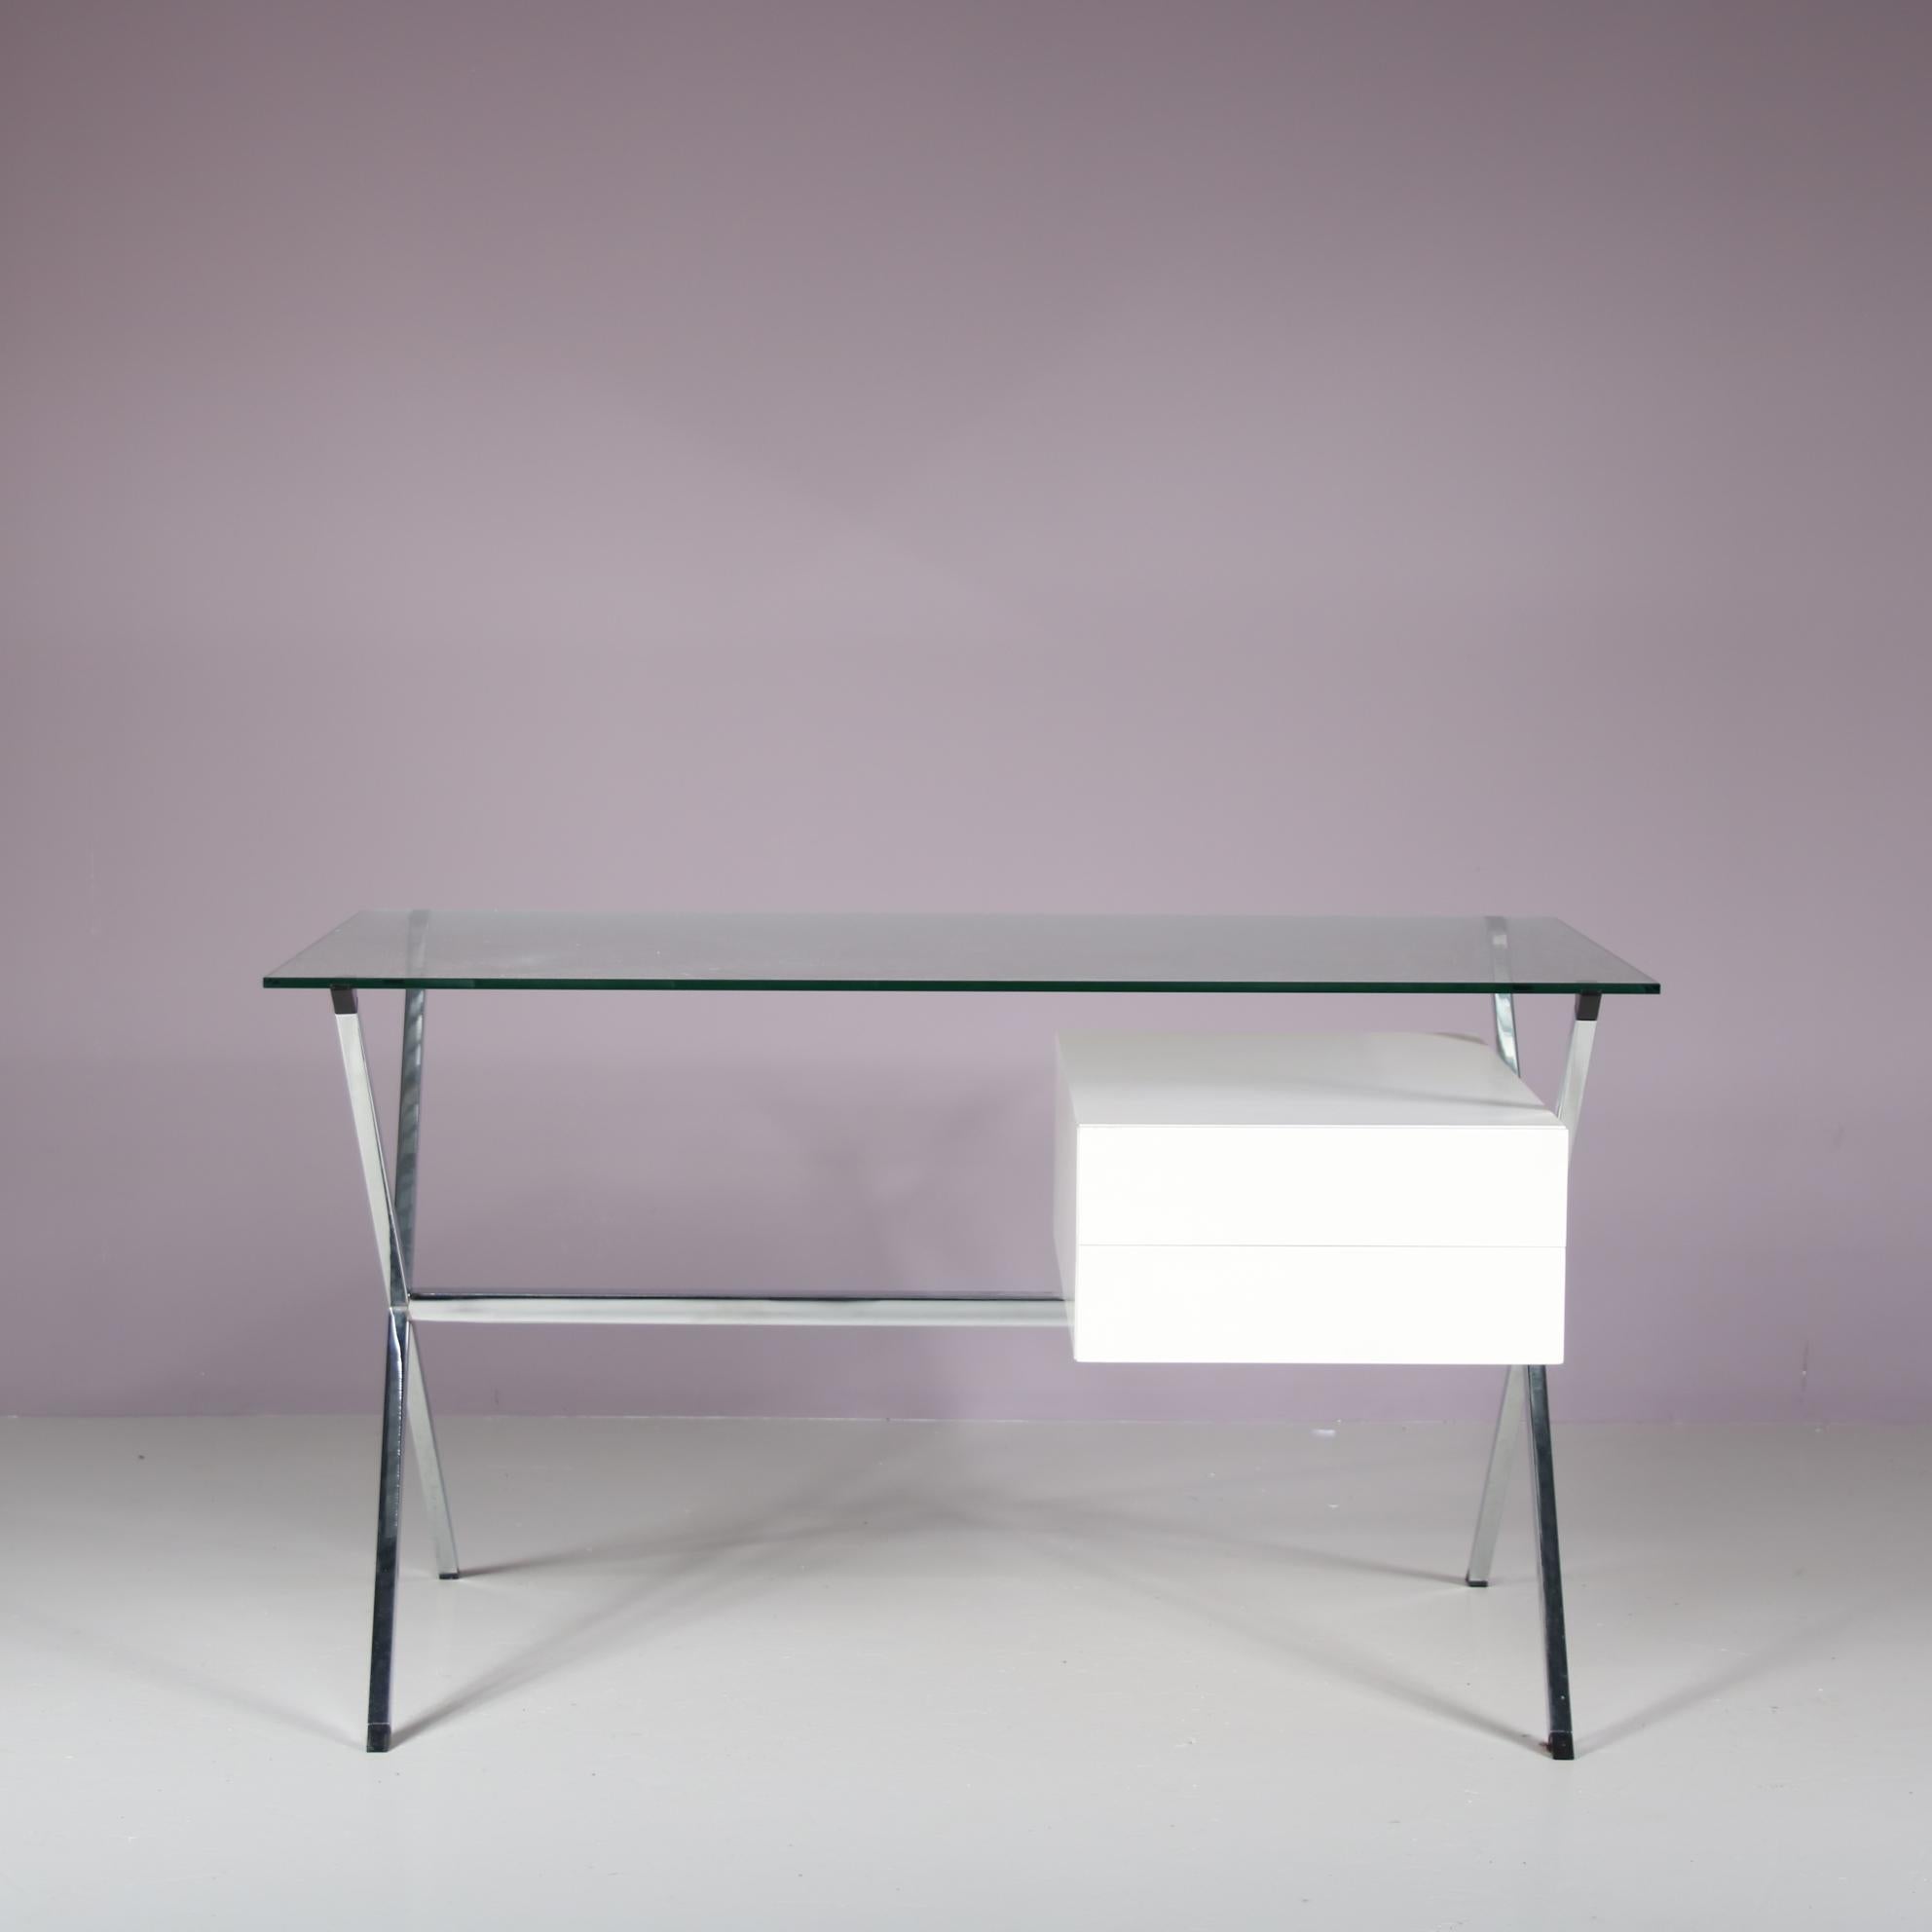 Ein wunderbarer Schreibtisch, entworfen von Franco Albini und hergestellt von Knoll International in den USA um 1960.

Das einzigartige Gestell des Tisches hat verchromte, gekreuzte Beine auf jeder Seite mit einer Stützstange dazwischen. Elegant und